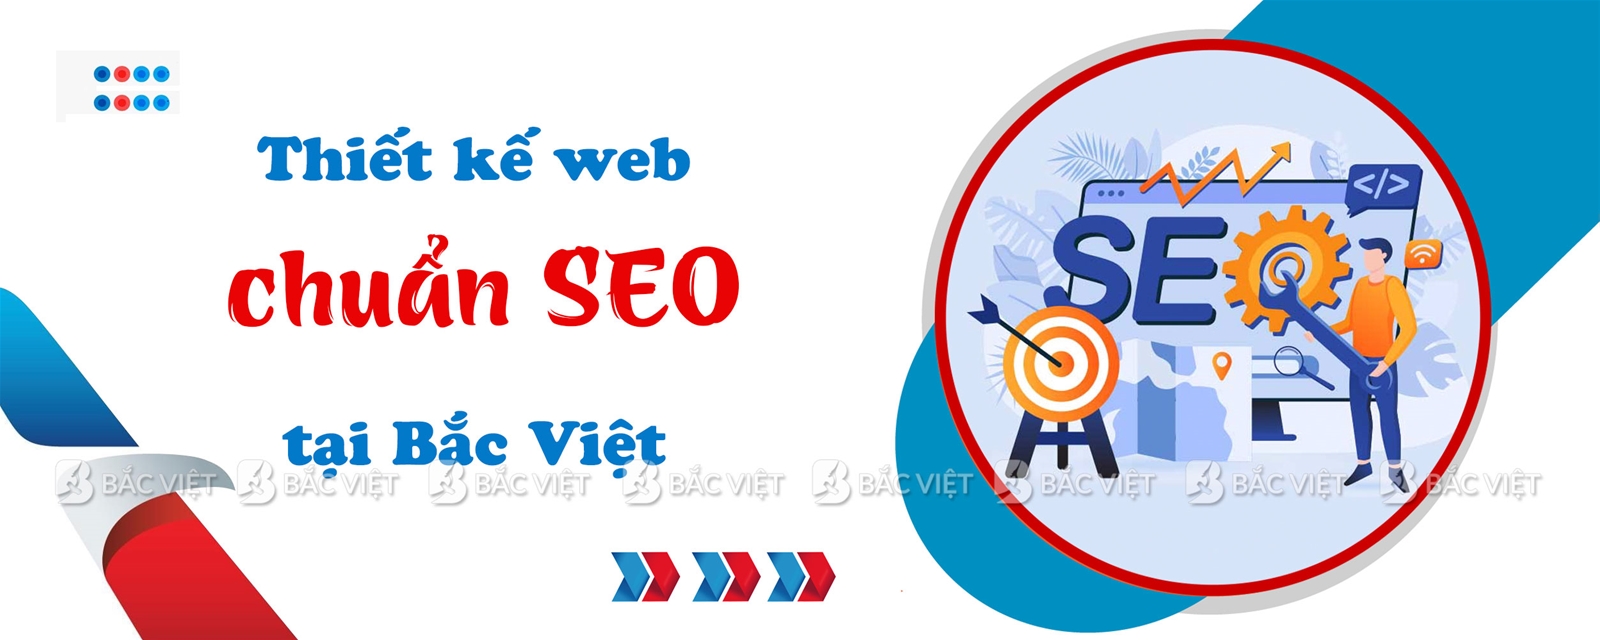 Thiết kế web chuẩn SEO tại Bắc Việt